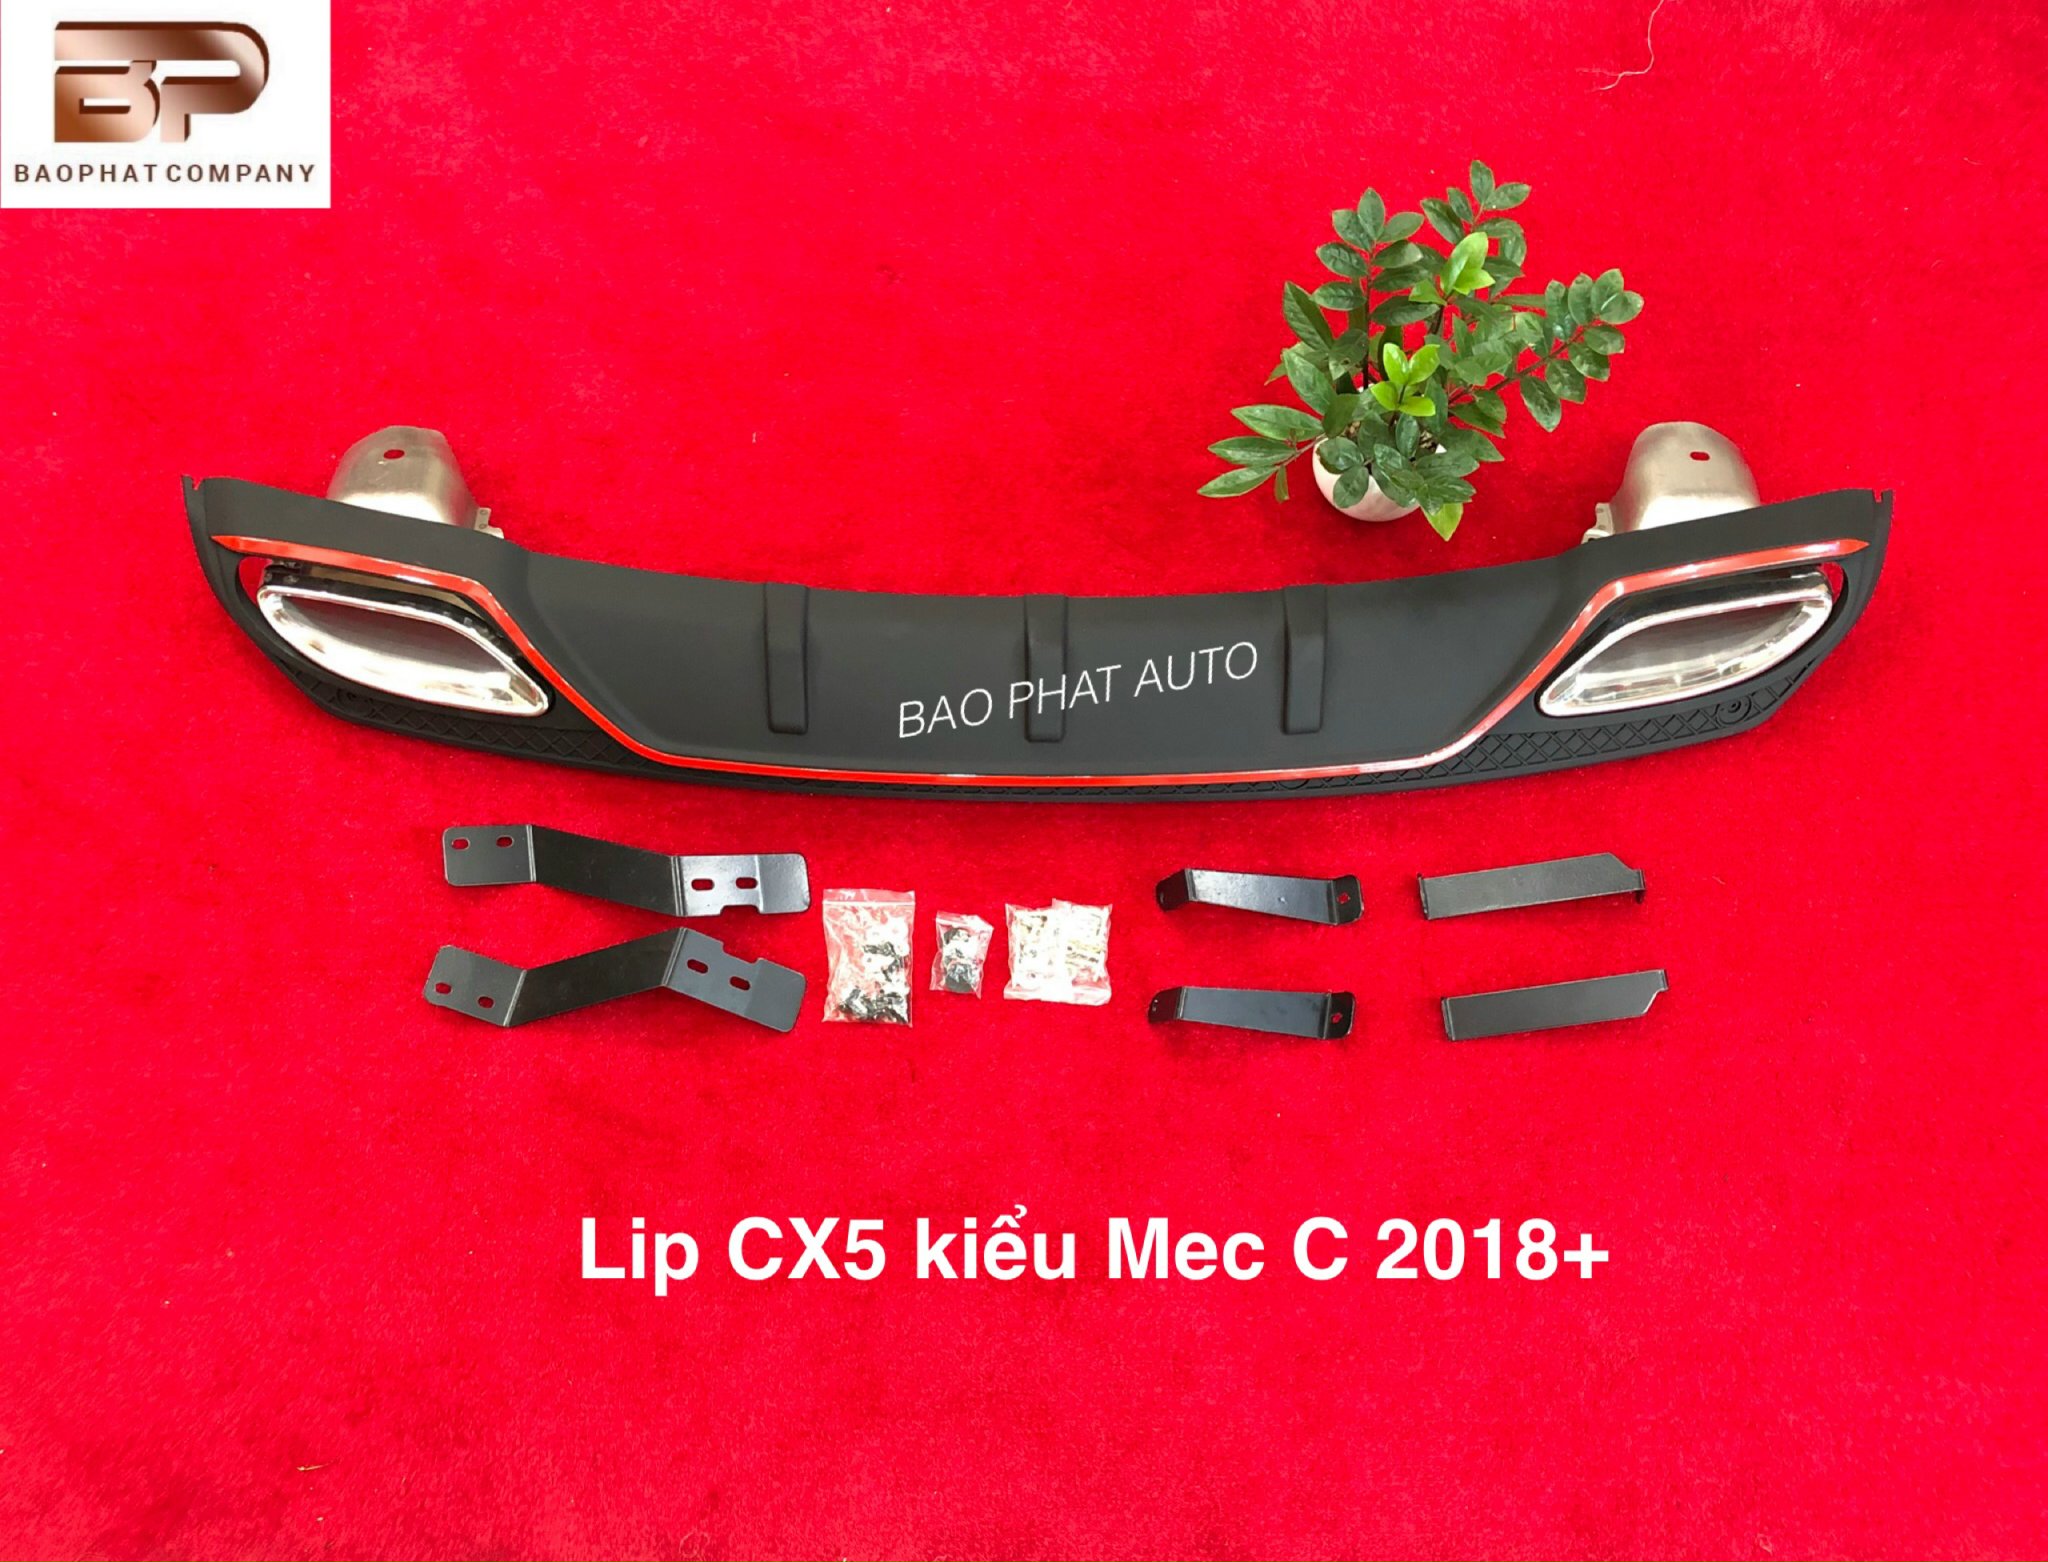 Lip CX5 kiểu Mec C 2018+